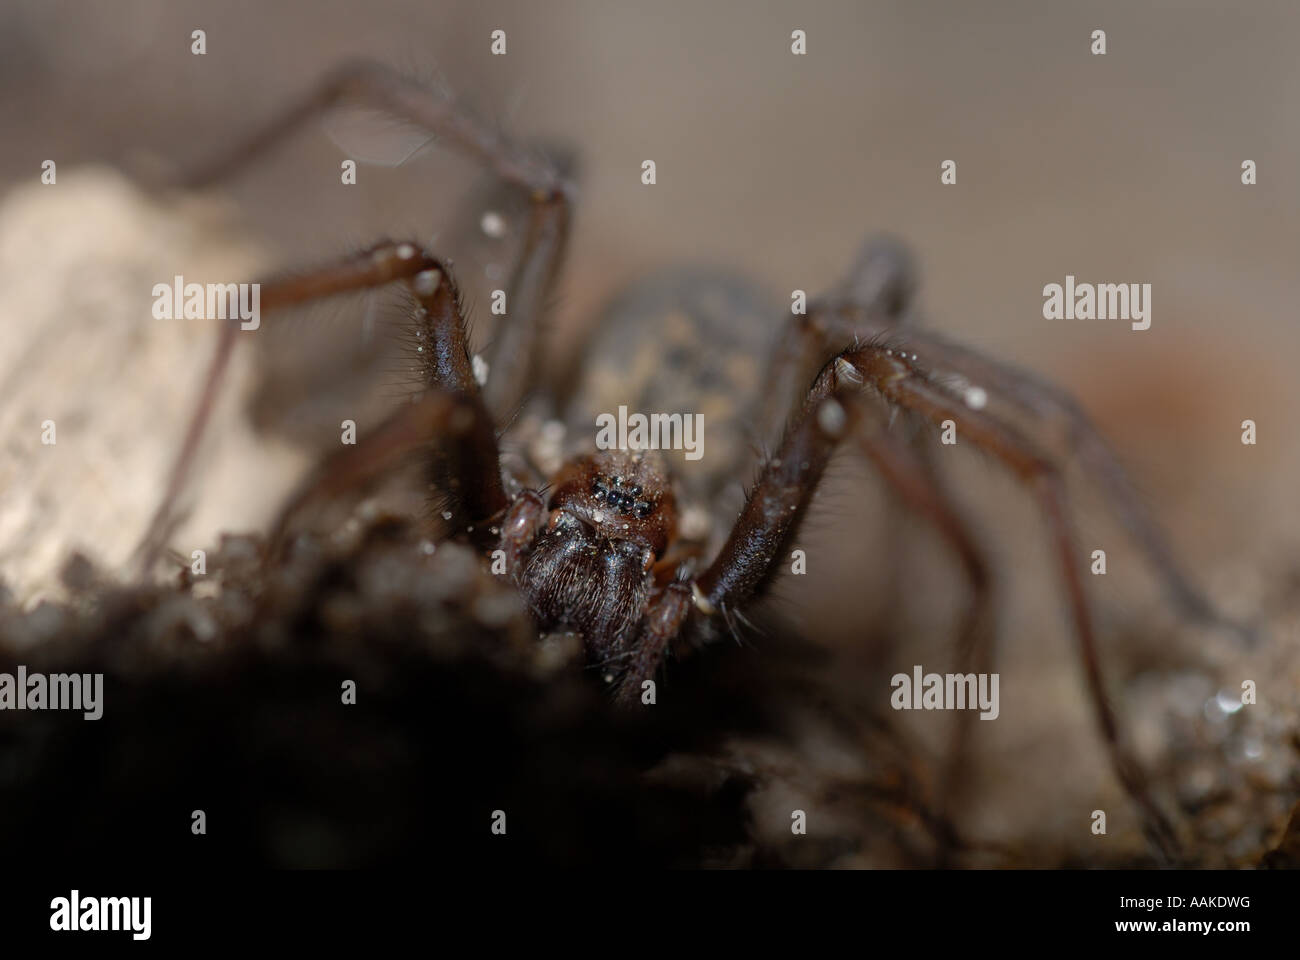 Common House Spider (Tegenaria atrica) Stock Photo